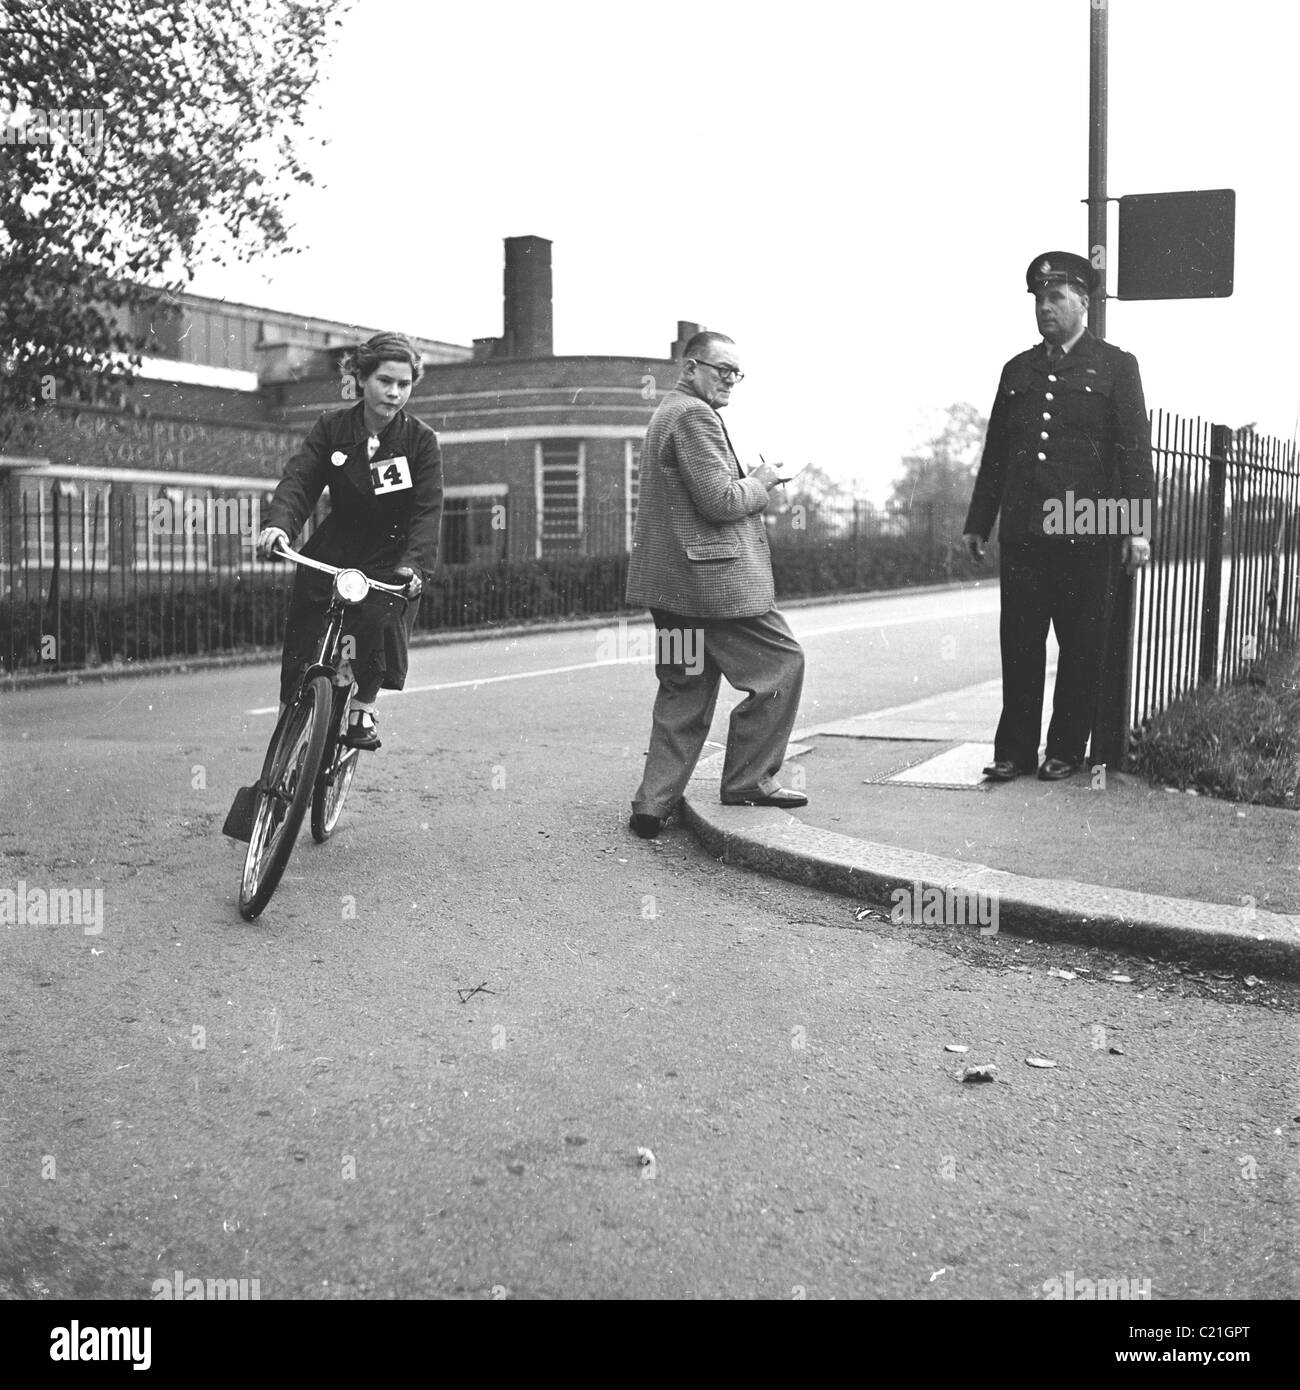 1950s, historique, debout sur un trottoir au coin d'une route, un policier regarde une écolière faire son test de maîtrise du cyclisme, Angleterre, Royaume-Uni. Banque D'Images